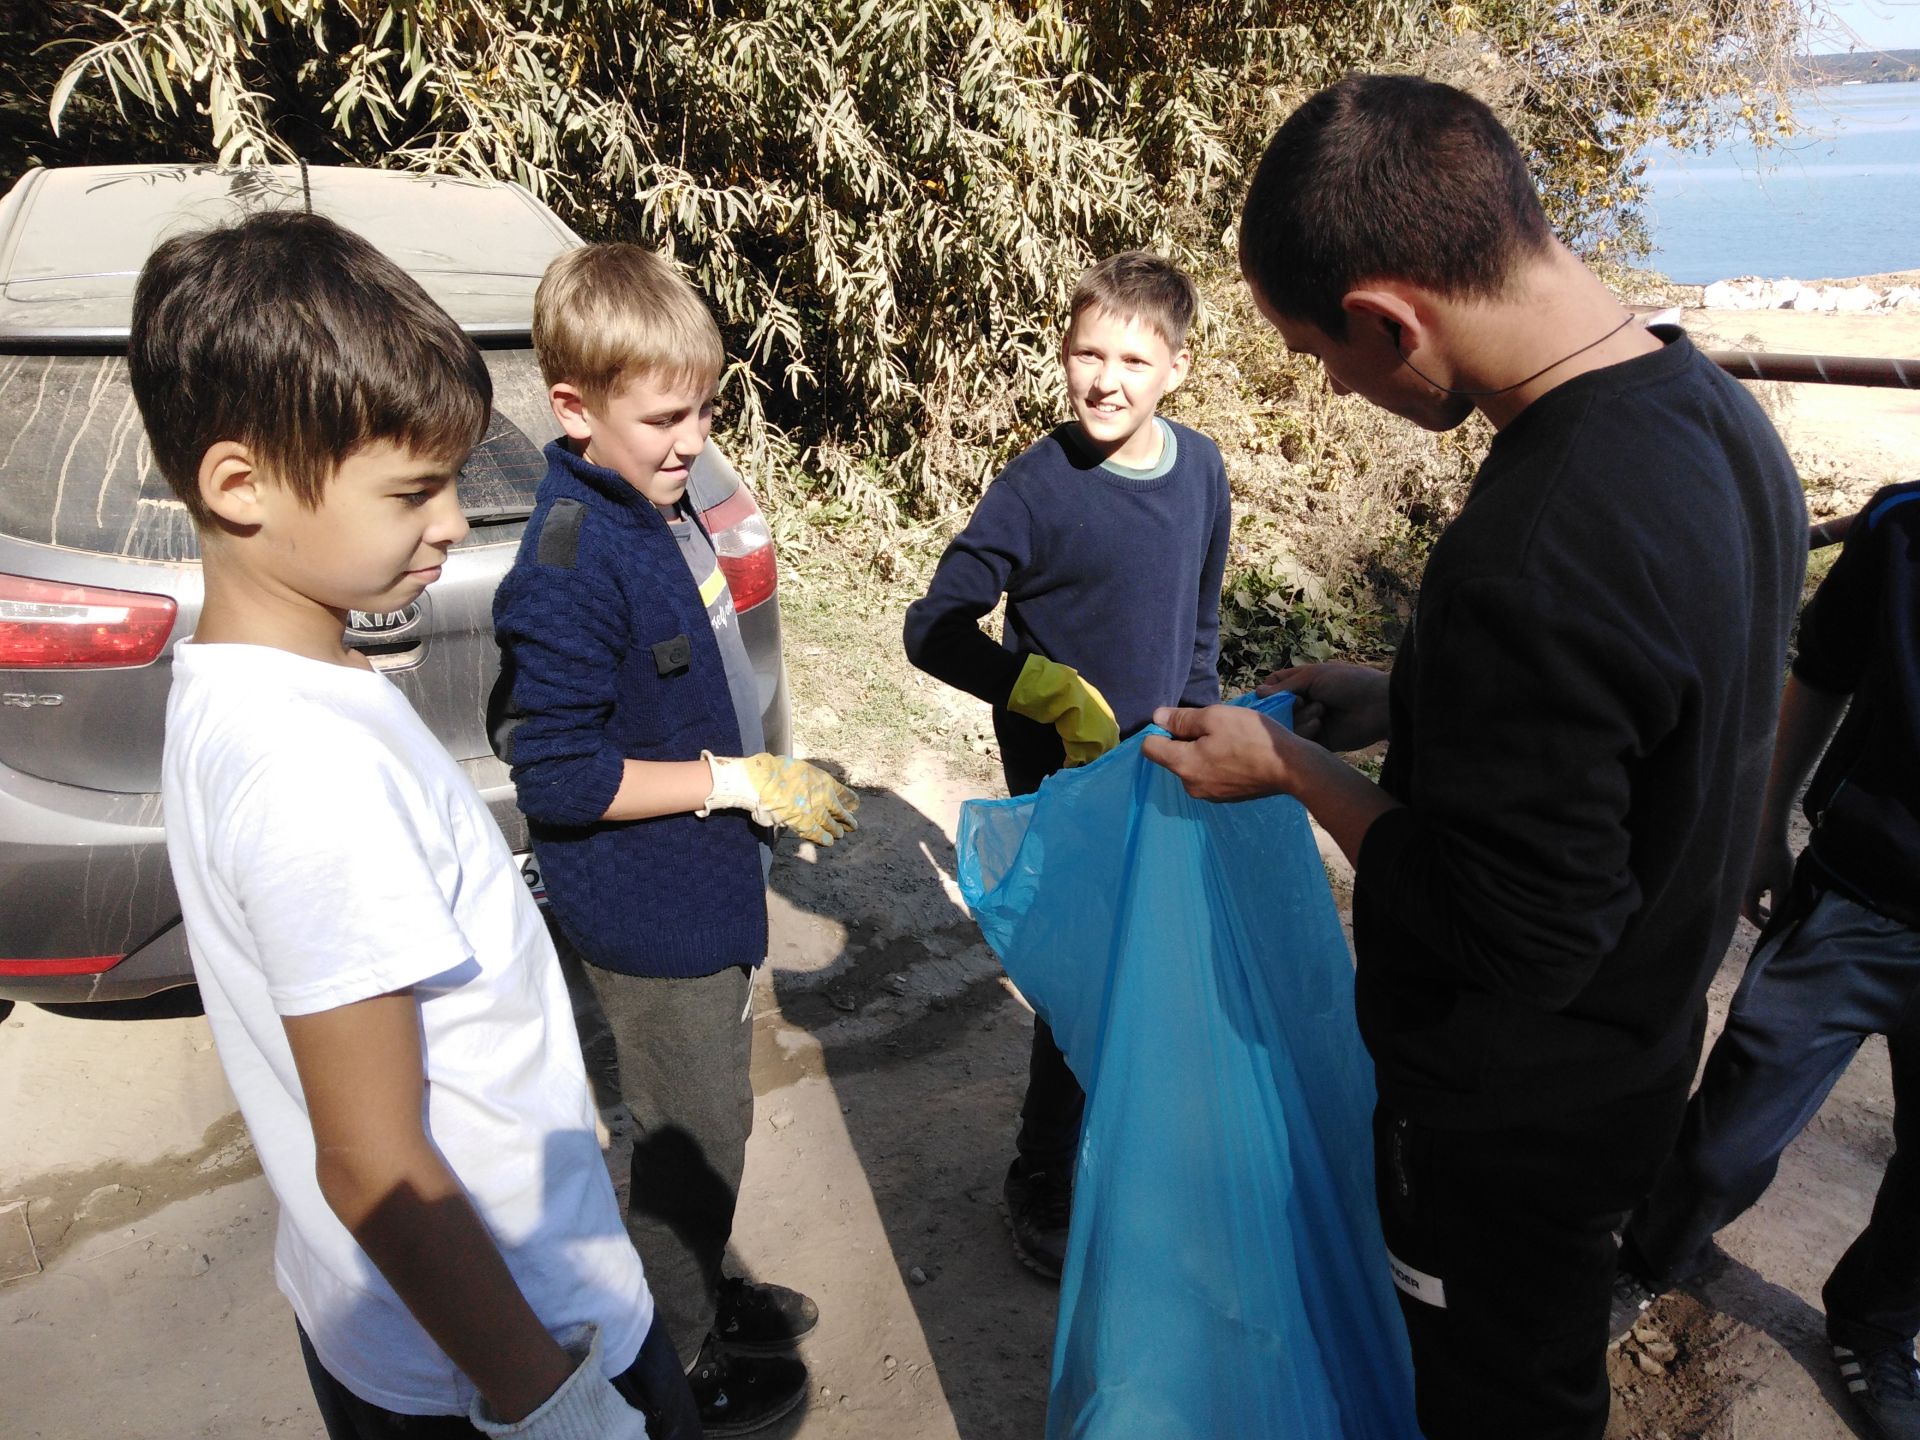 Учащиеся Матюшинской школы Верхнеуслонского района приняли участие в акции "Чистый берег"